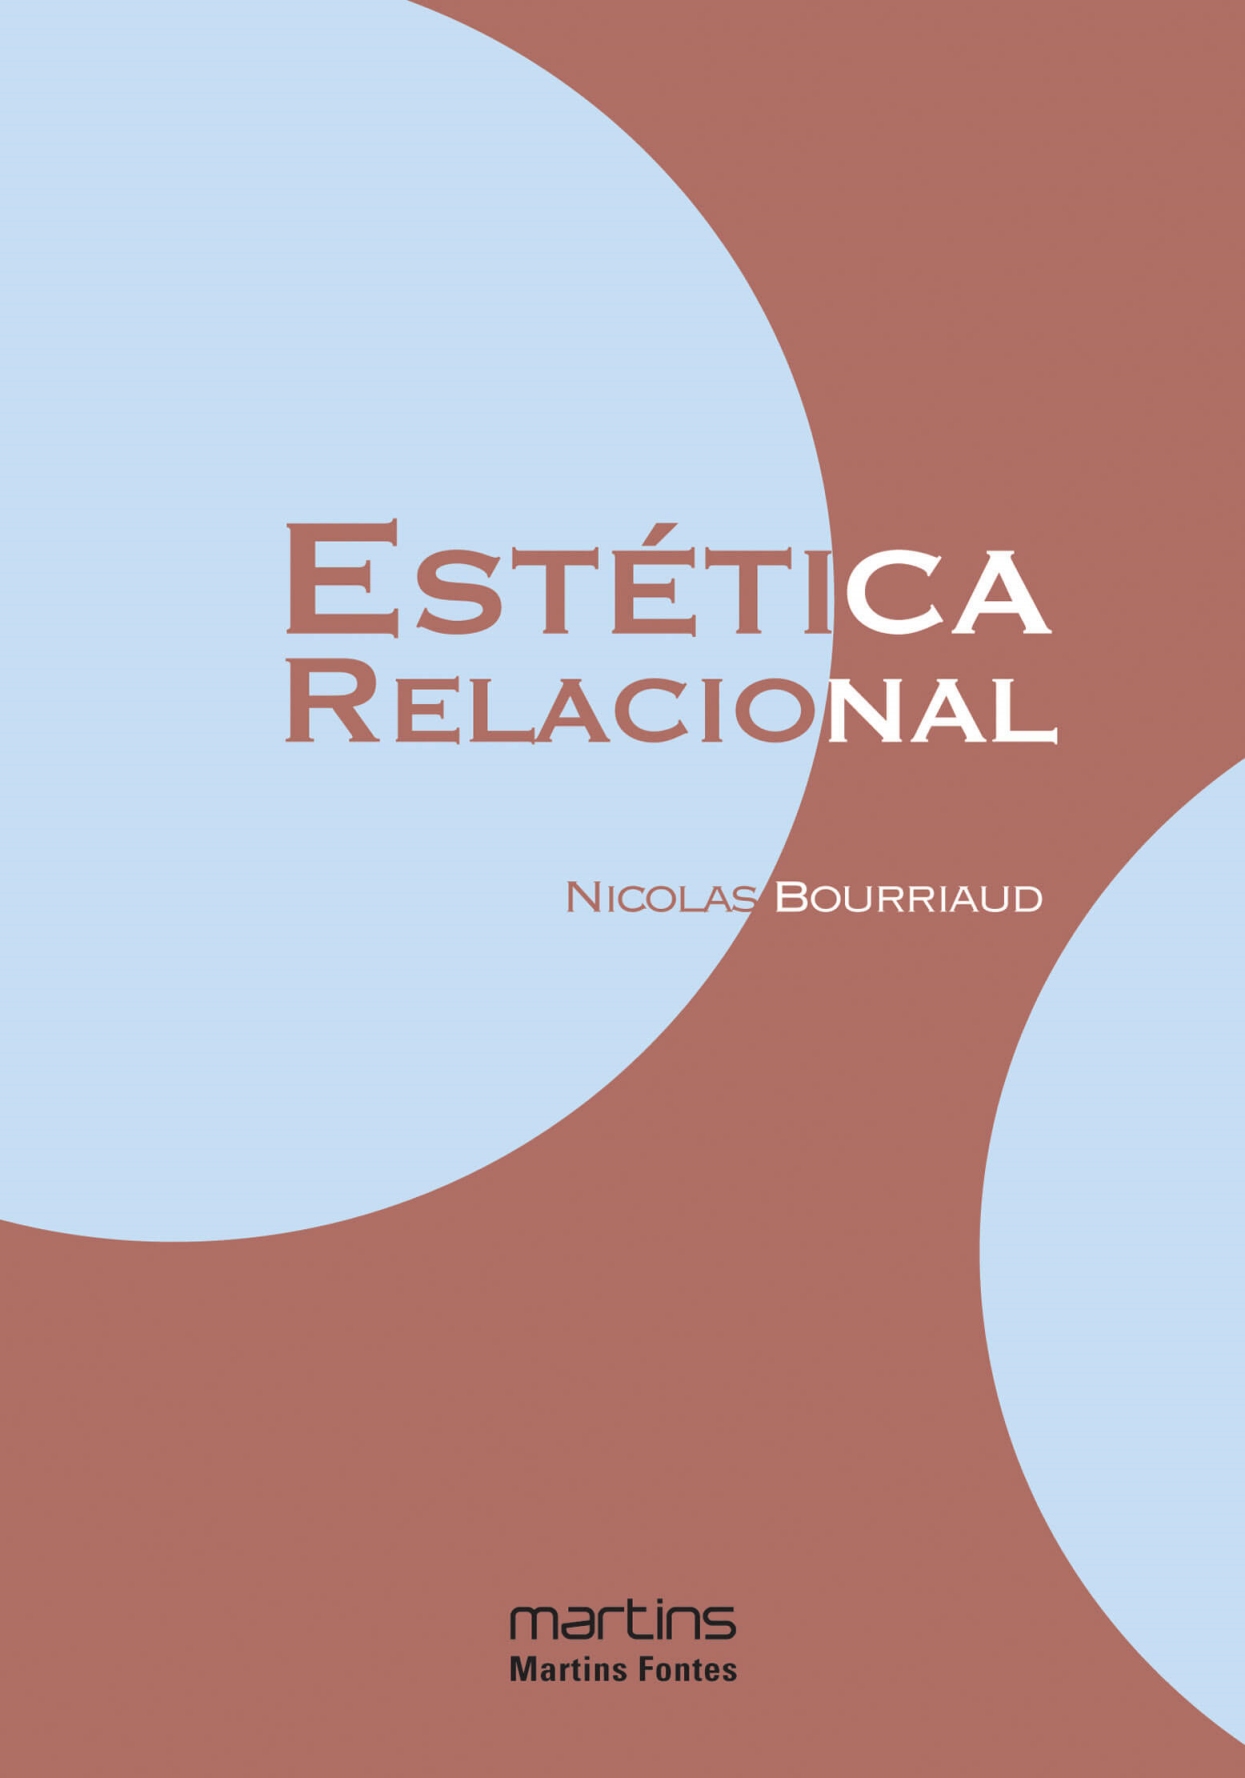 Estética relacional  - Martins Fontes